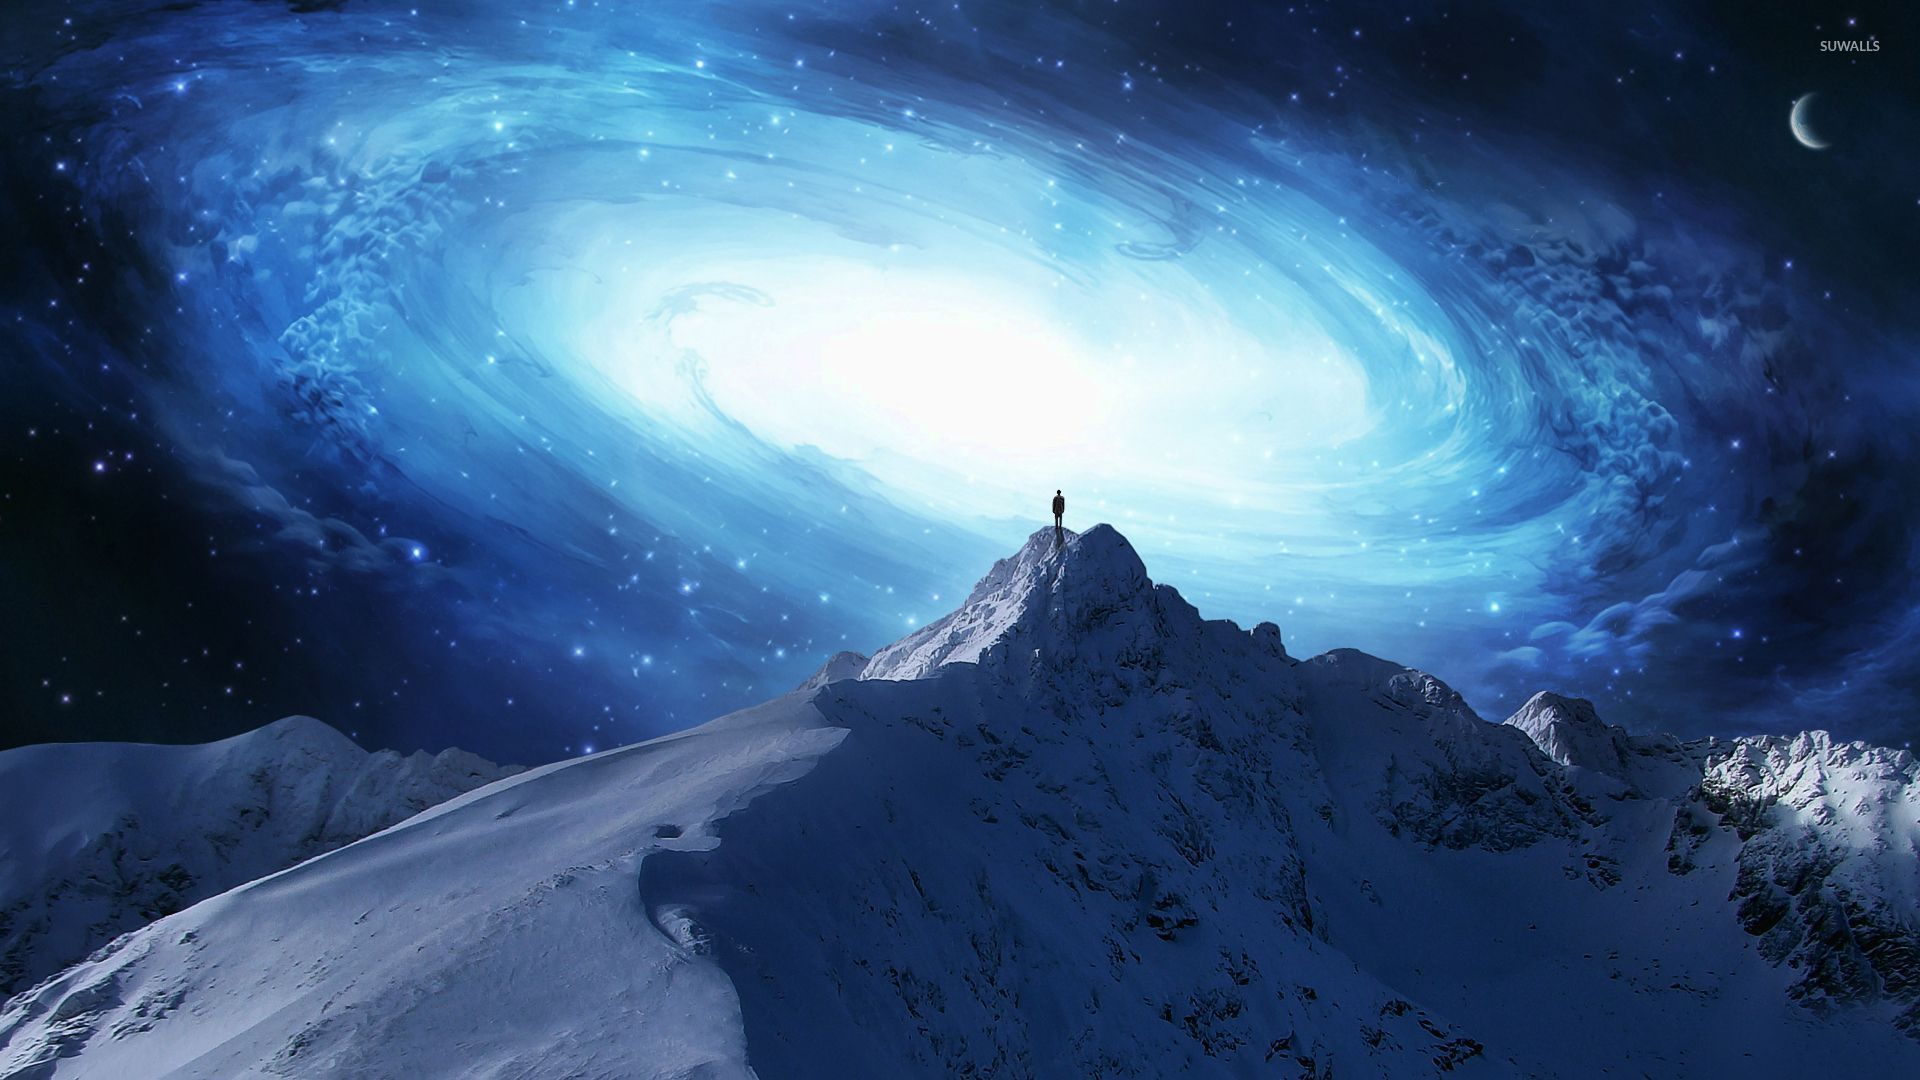 man-on-the-mountain-peak-overlooking-the-galaxy-26261-1920x1080.jpg